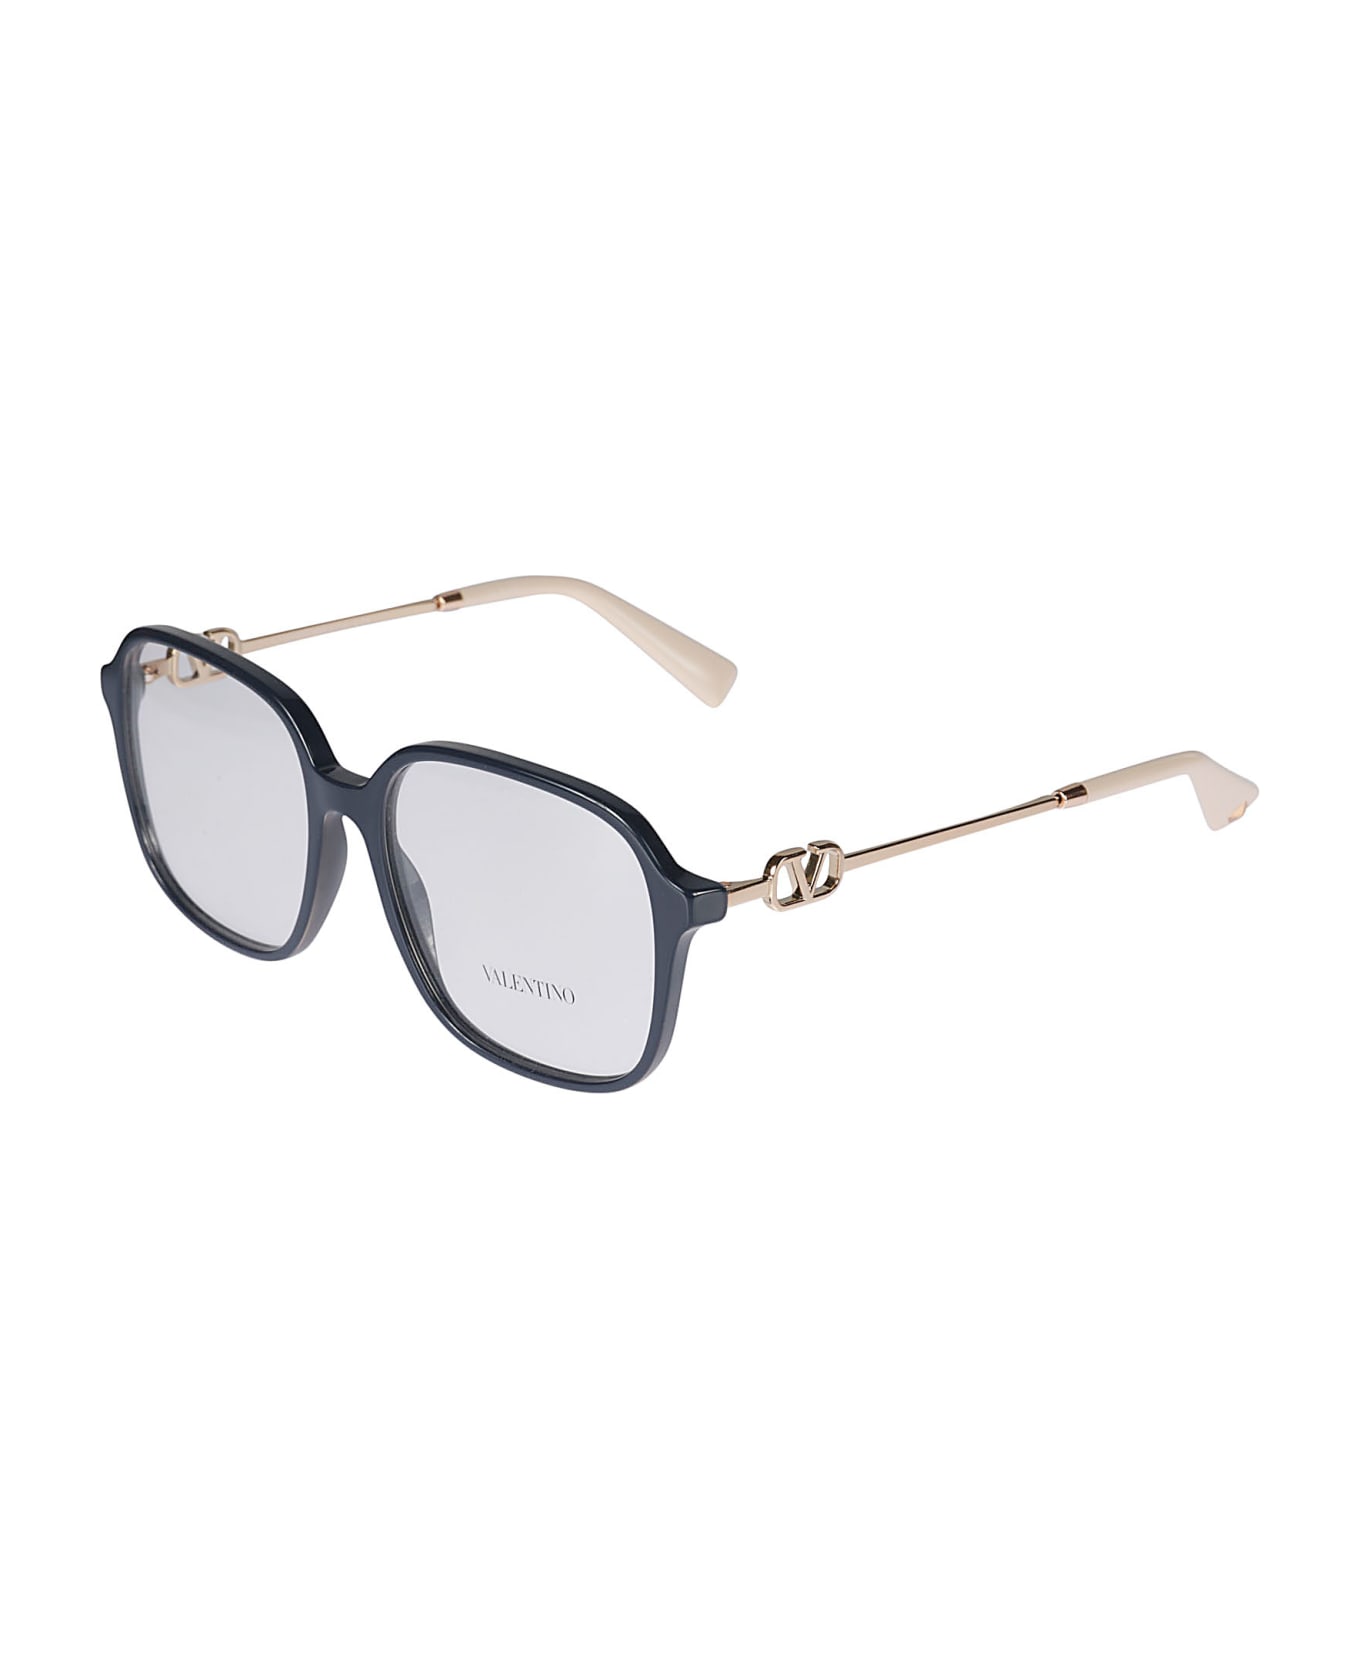 Valentino Eyewear Vista5034 Glasses - 5034